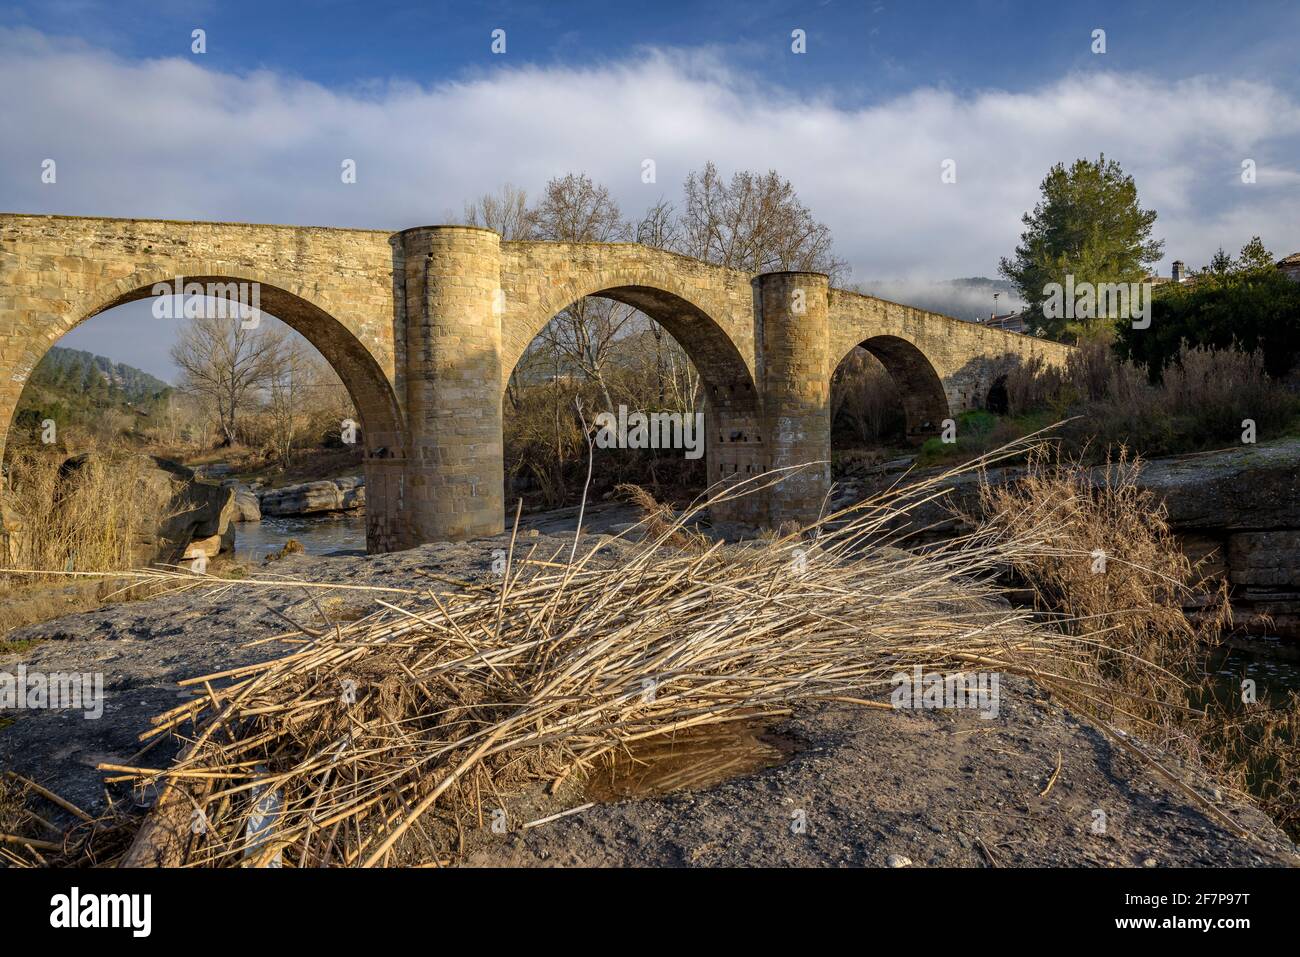 El Pont de Vilomara medieval bridge over the Llobregat river (Barcelona province, Catalonia, Spain) ESP: El puente medieval de El Pont de Vilomara Stock Photo